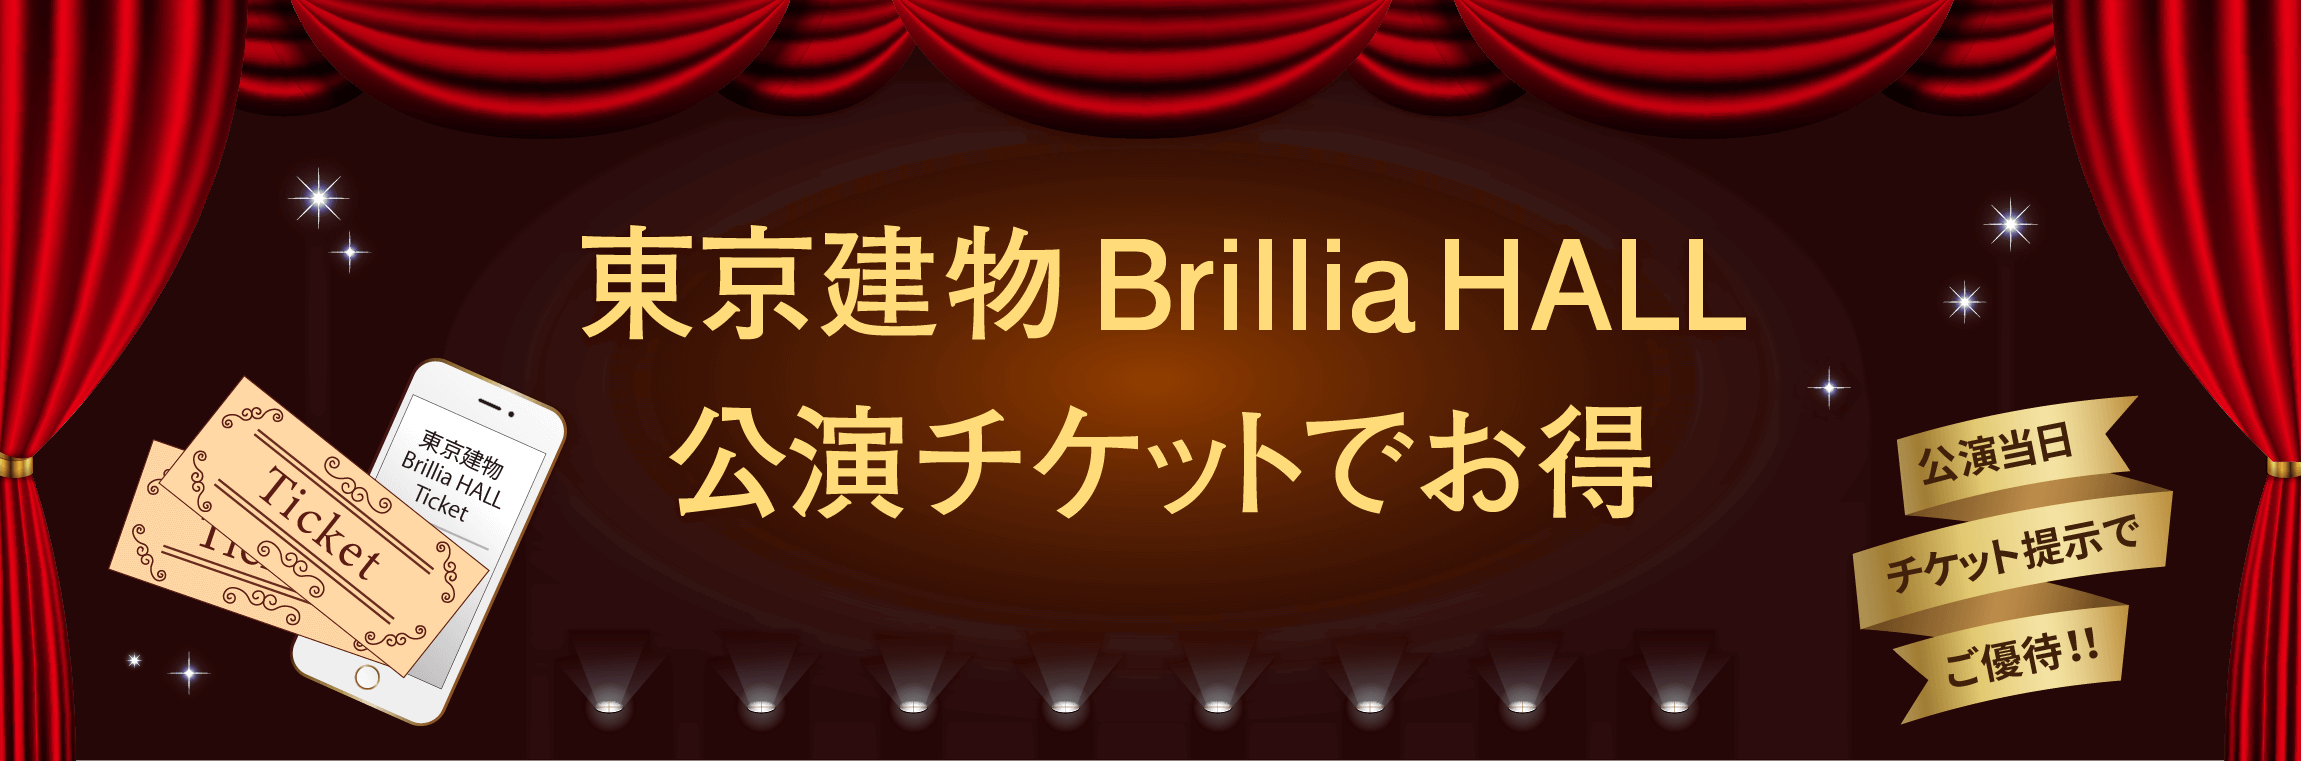 WACCA池袋 × 東京建物 Brillia HALL  ブリリアホール 公演チケットでお得